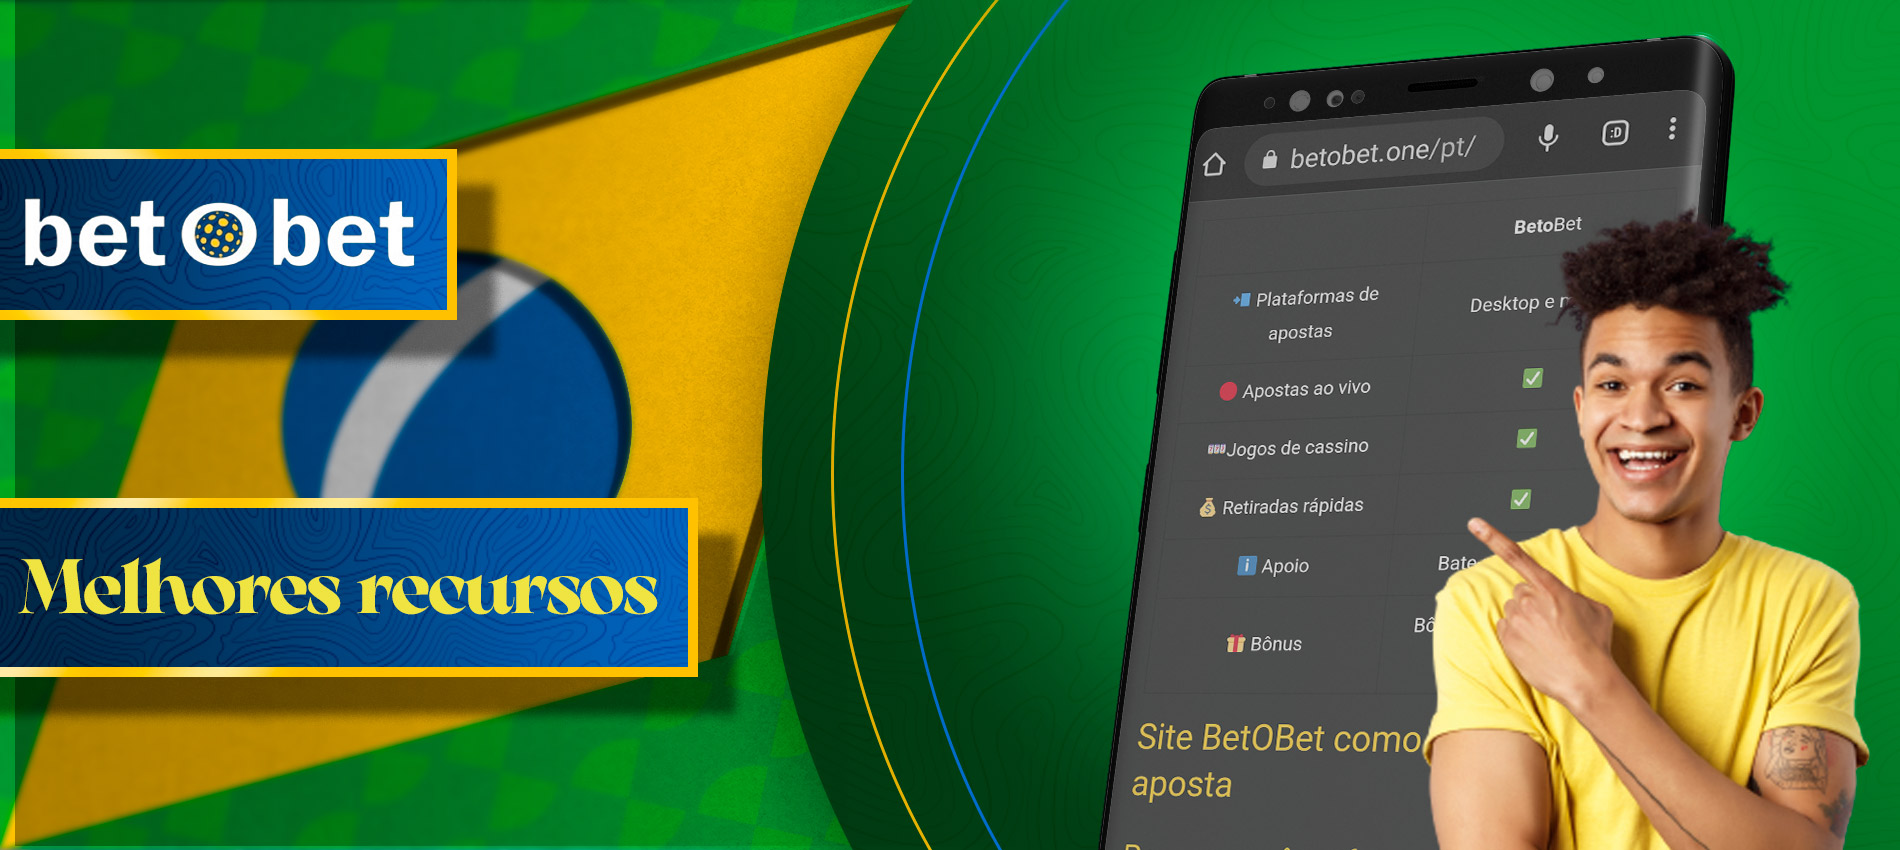 Betobet Brasil Oficial: Apostas Esportivas Online e Cassino